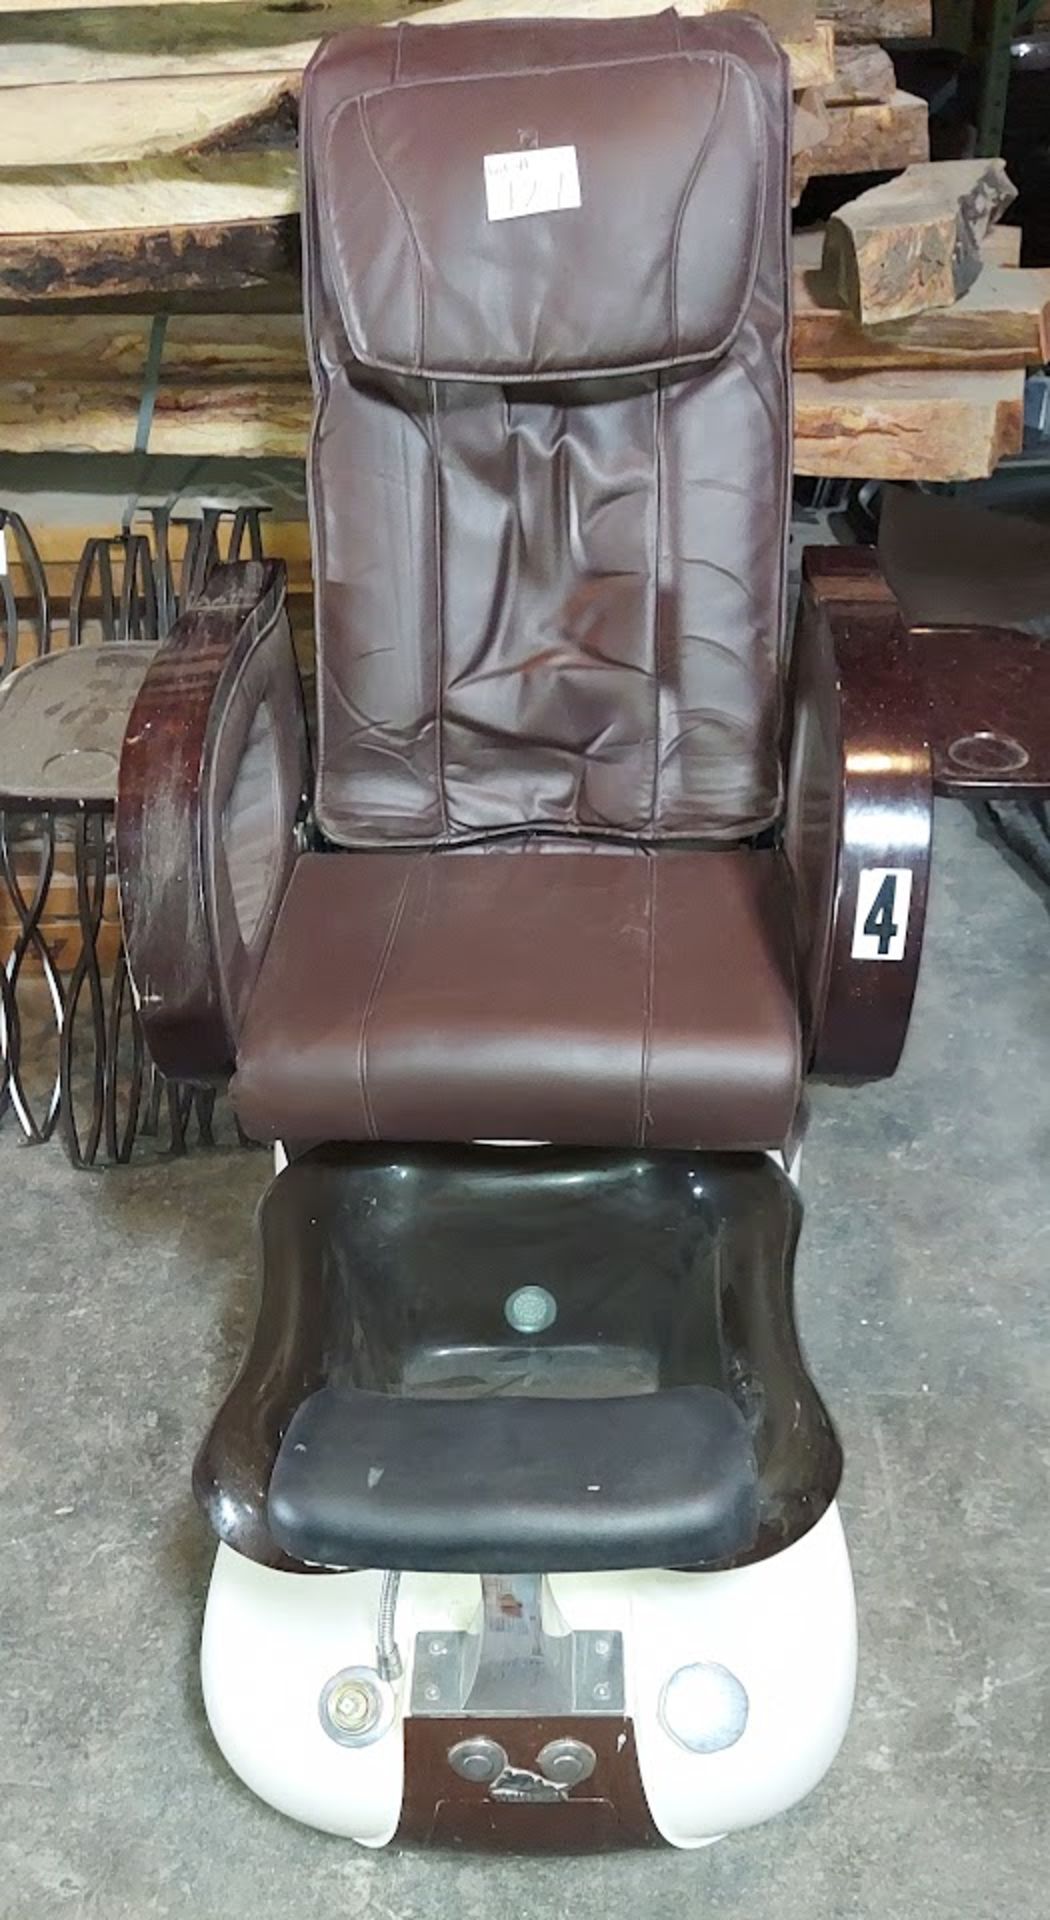 Whatt-Spa Nail Salon Chair - Image 2 of 2